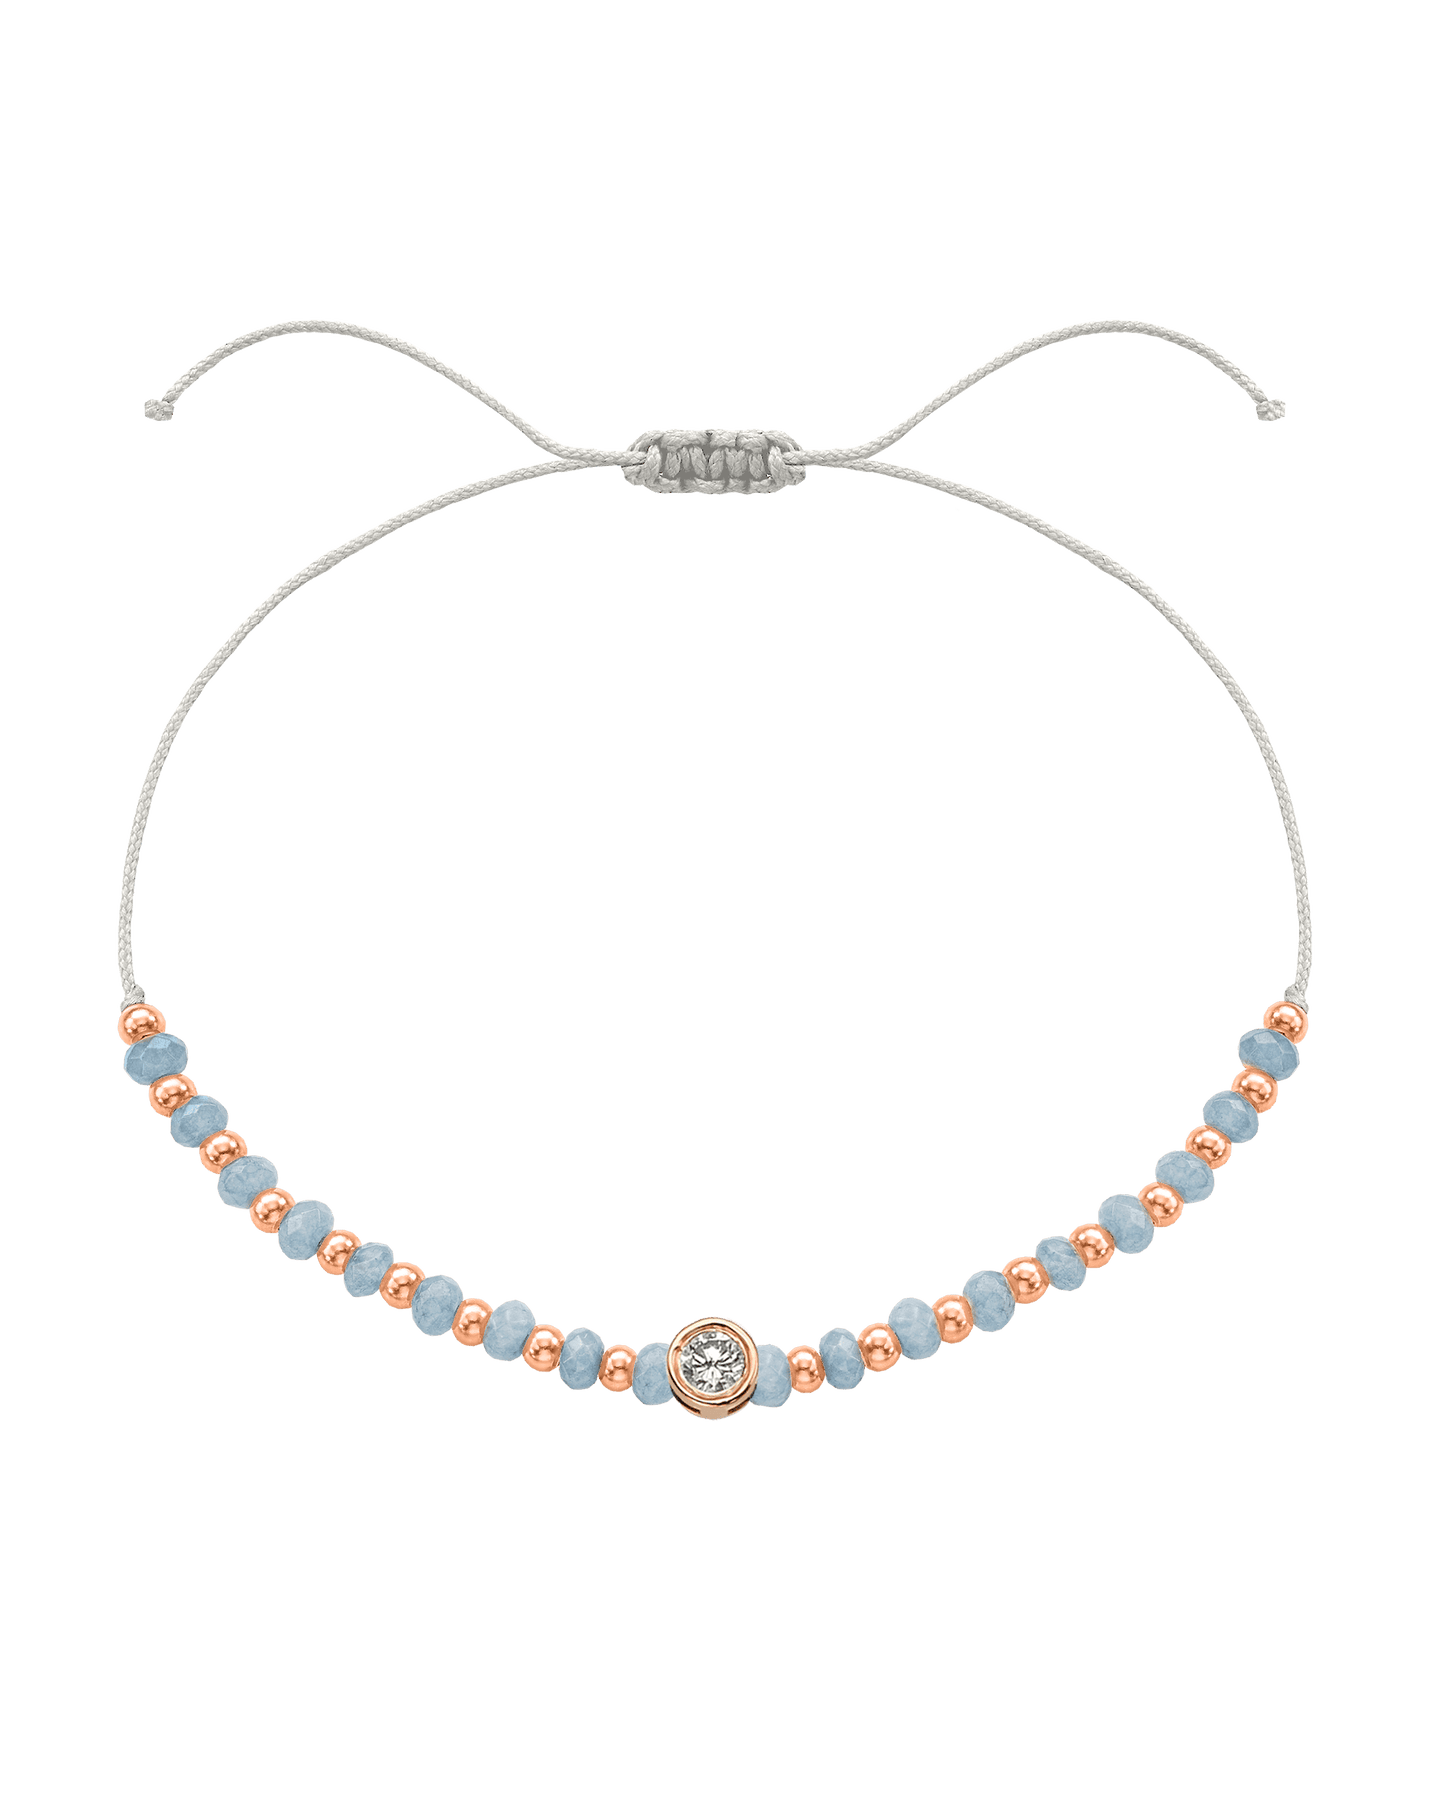 Celestite Gemstone String of Love Bracelet for Mindfulness - 14K Rose Gold Bracelets 14K Solid Gold Pearl Large: 0.1ct 